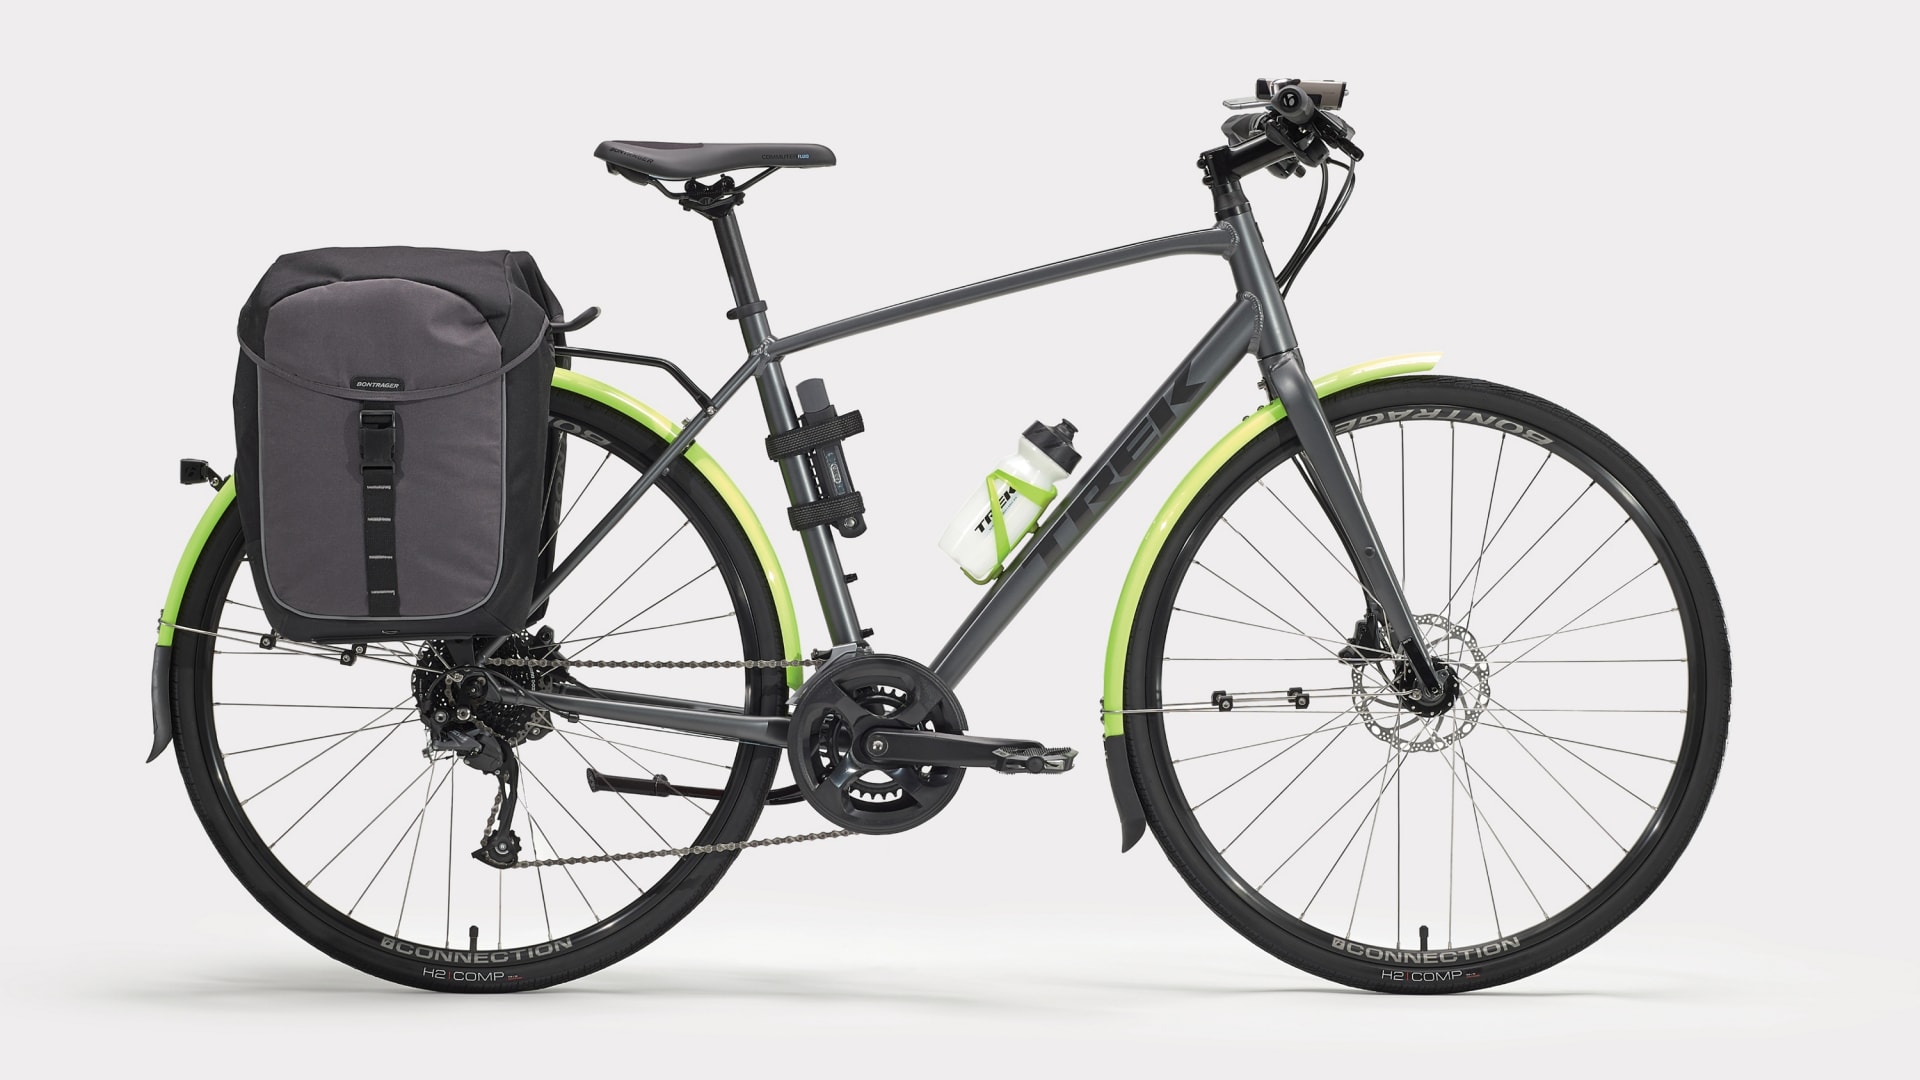 Trek FX hybrid bike with accessories